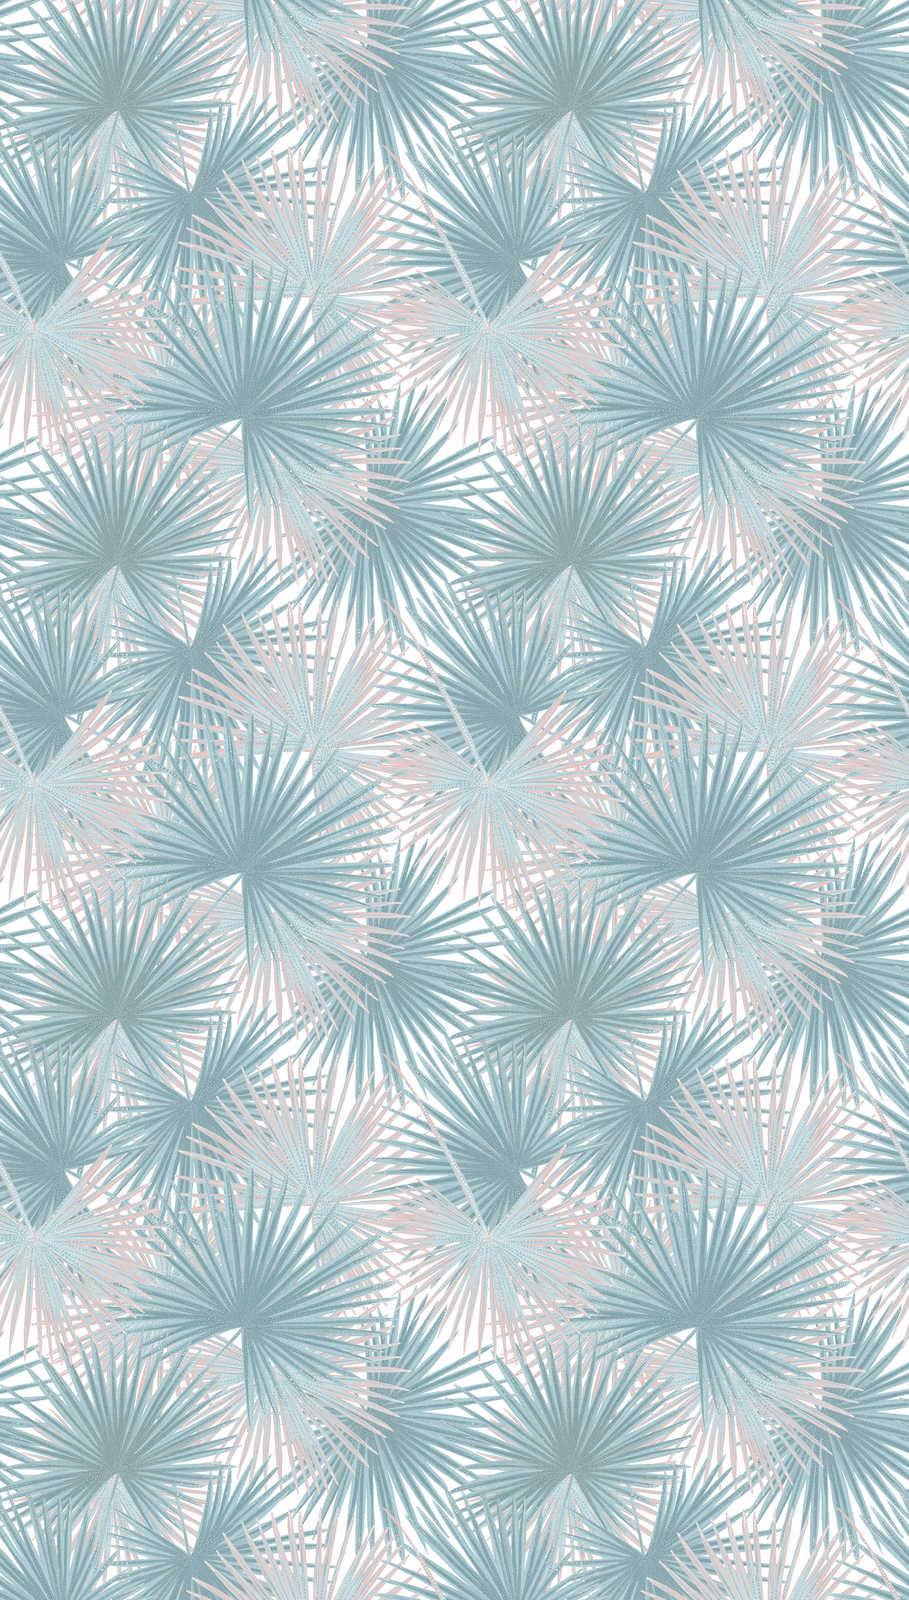             Papel pintado no tejido con motivo de hojas grandes - azul, beige, blanco
        